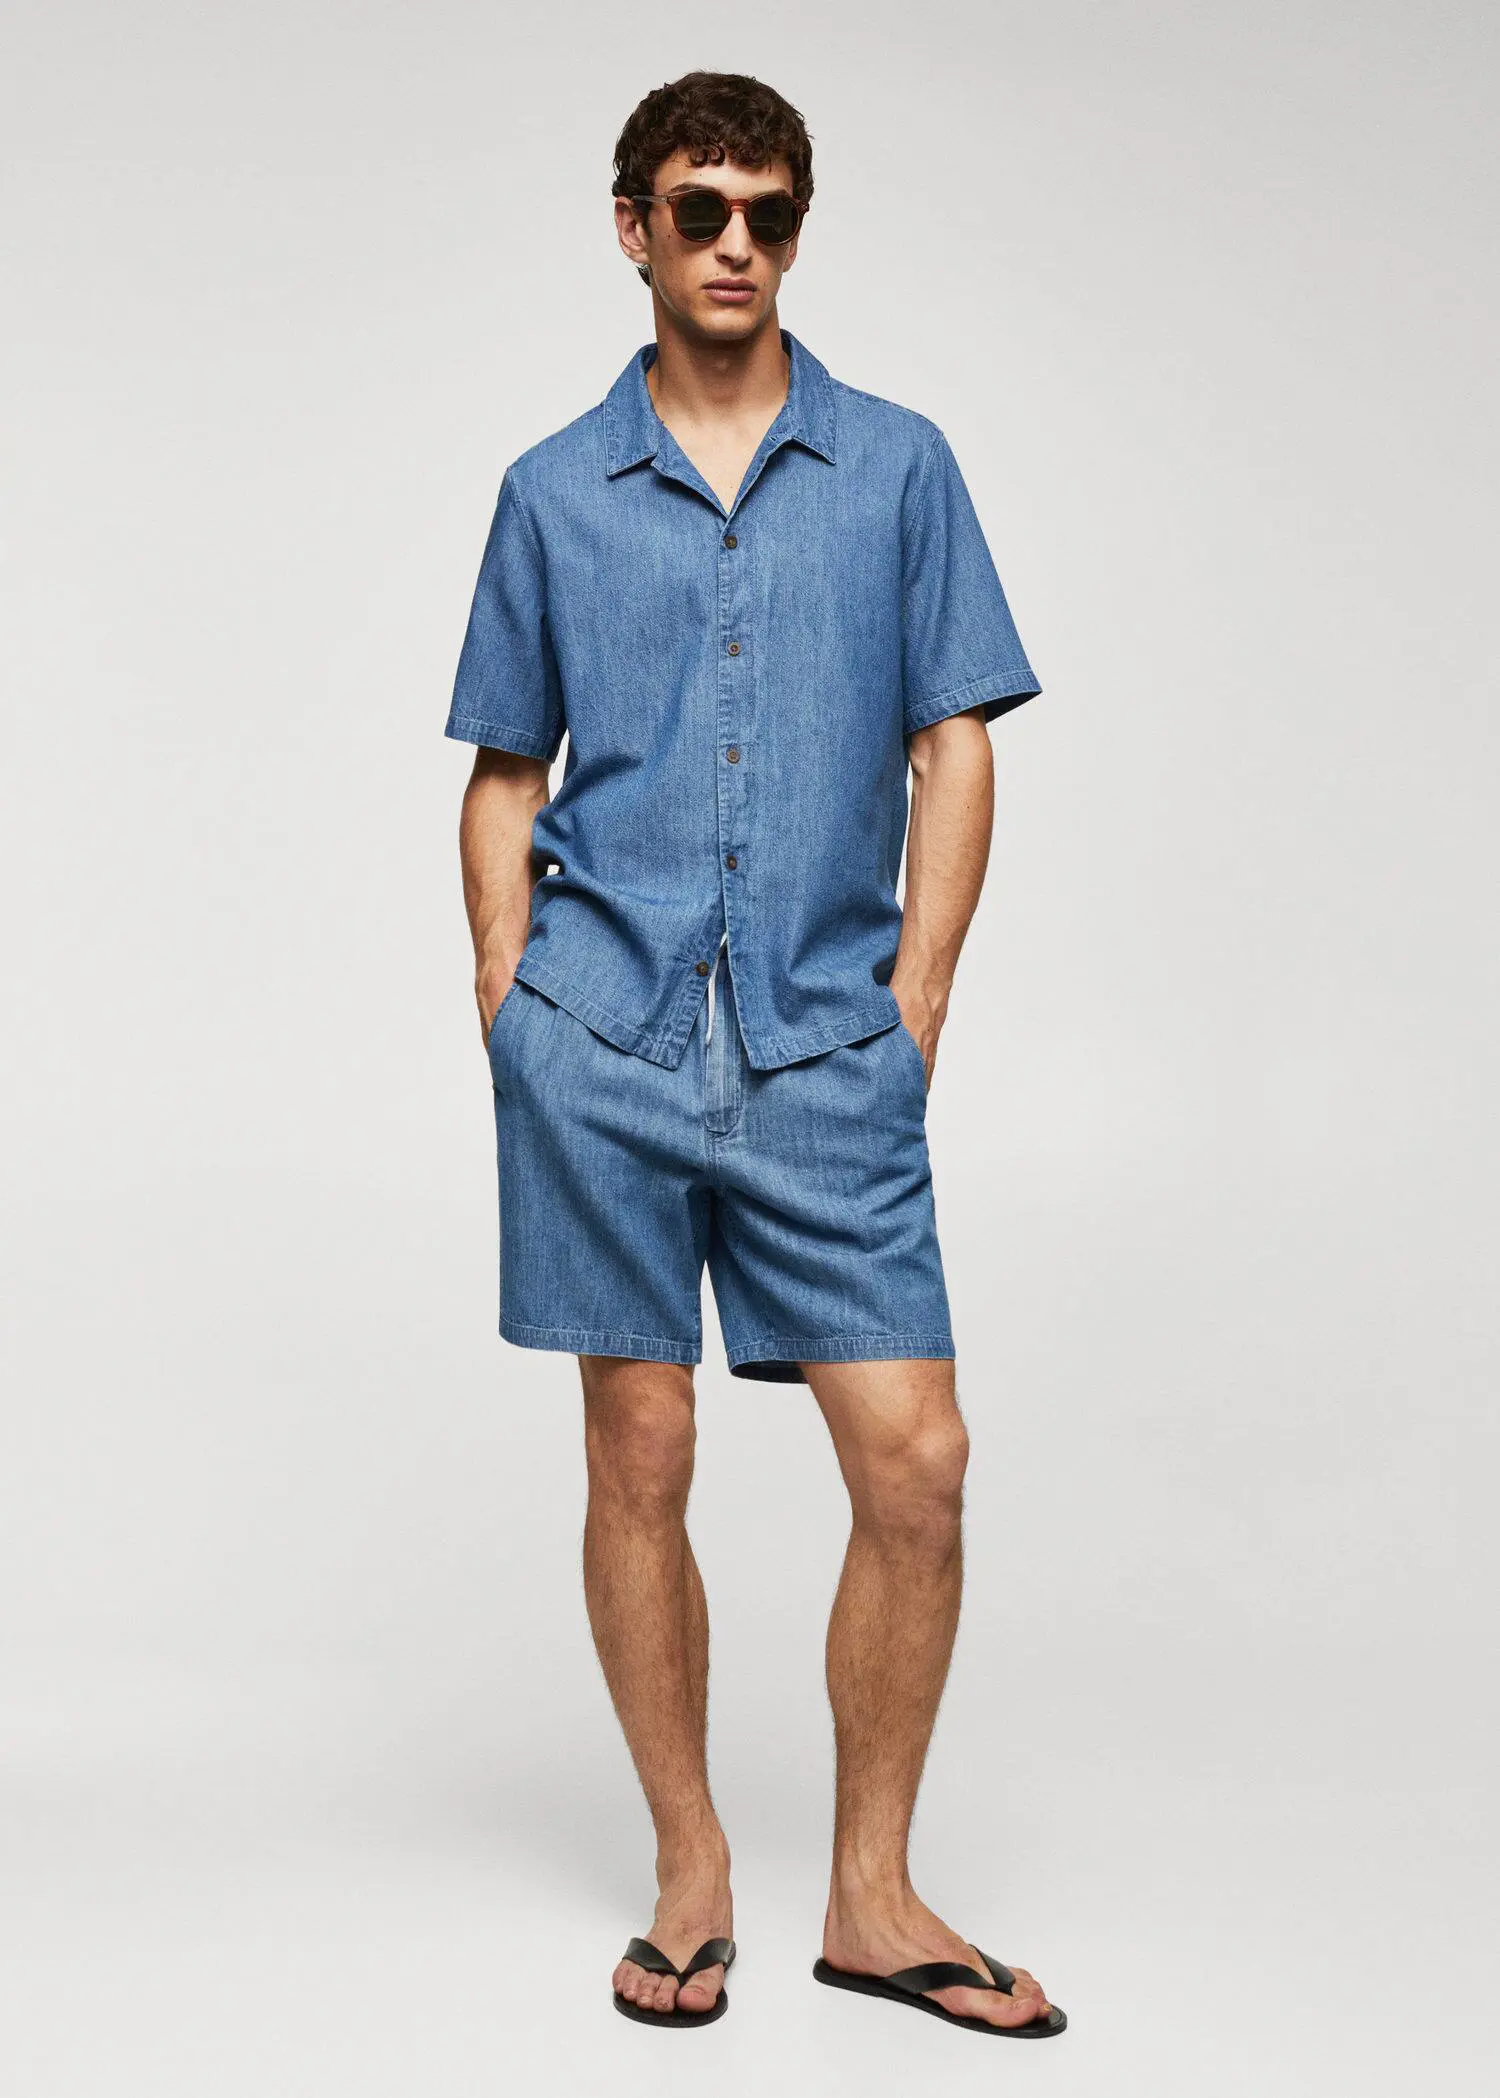 Mango Chambray Bermuda shorts. a man in a blue shirt and shorts. 